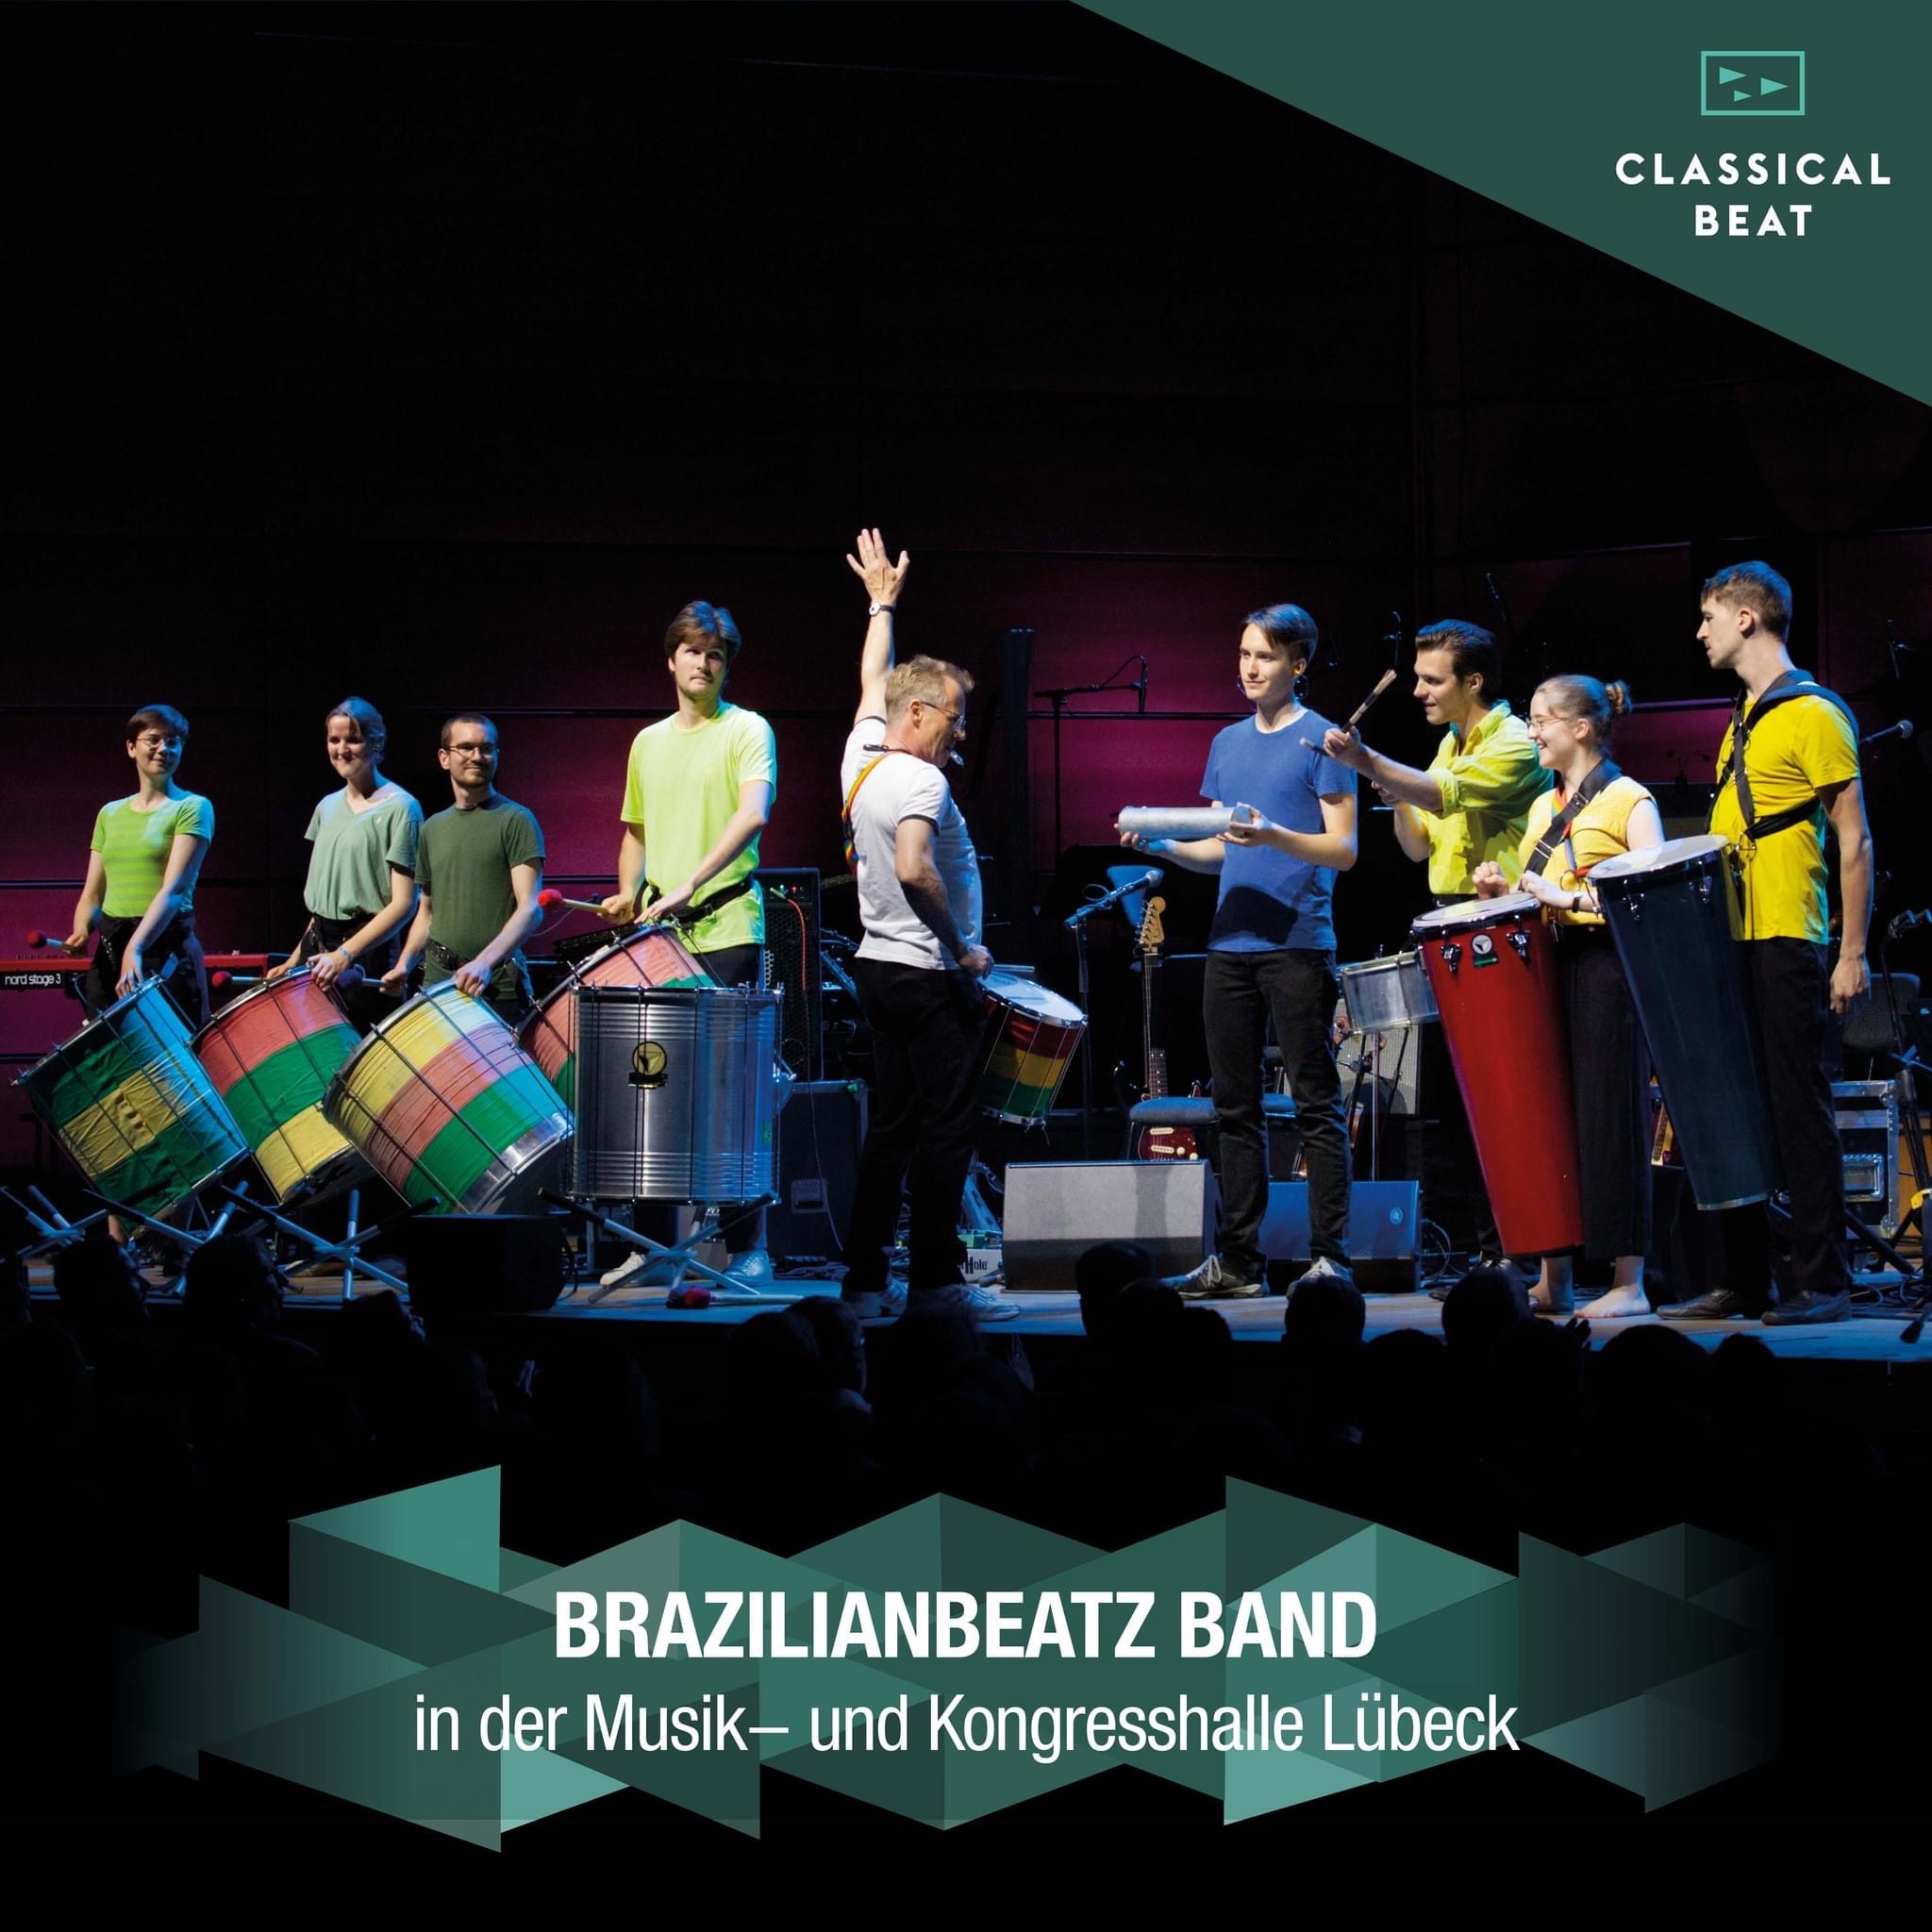 BrazilianBeatz mit "Funky-Samba" in der Musik- und Kongresshalle Lübeck am 21. Juli 2022